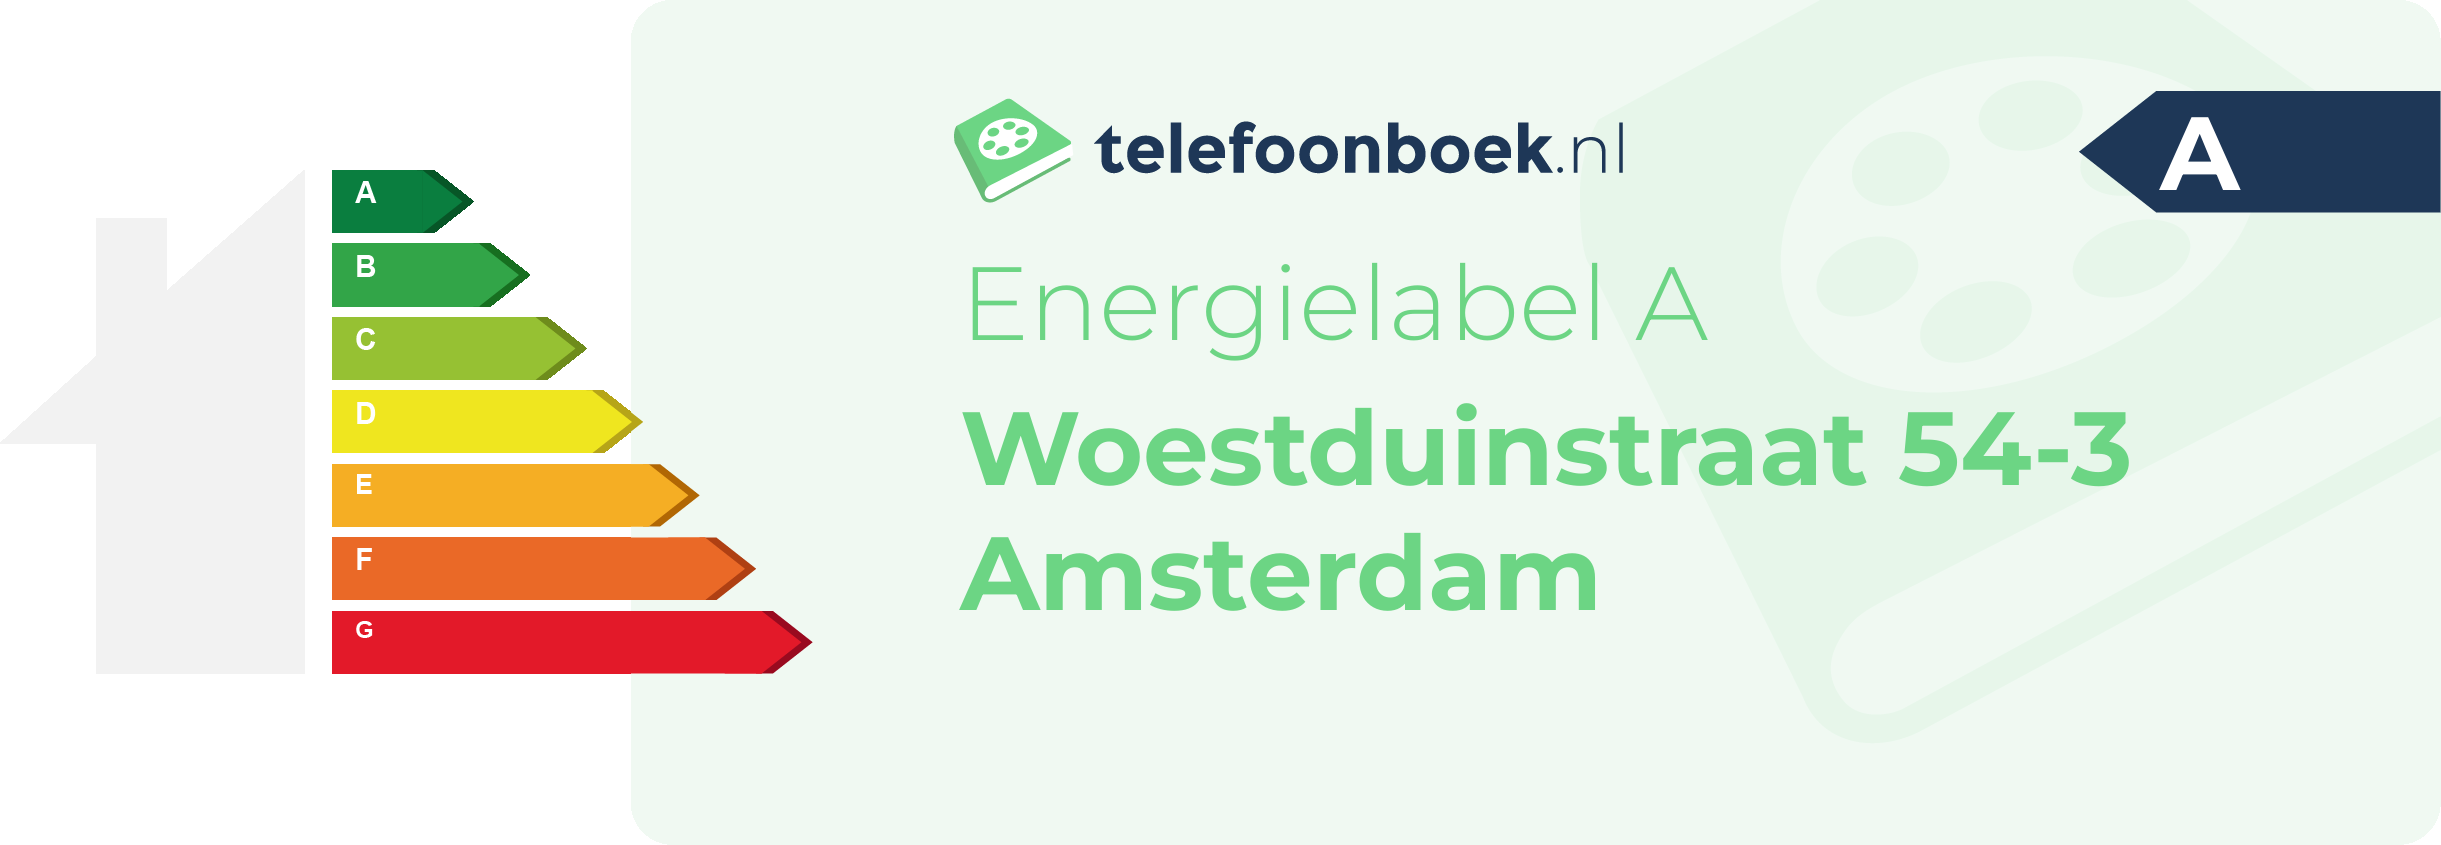 Energielabel Woestduinstraat 54-3 Amsterdam